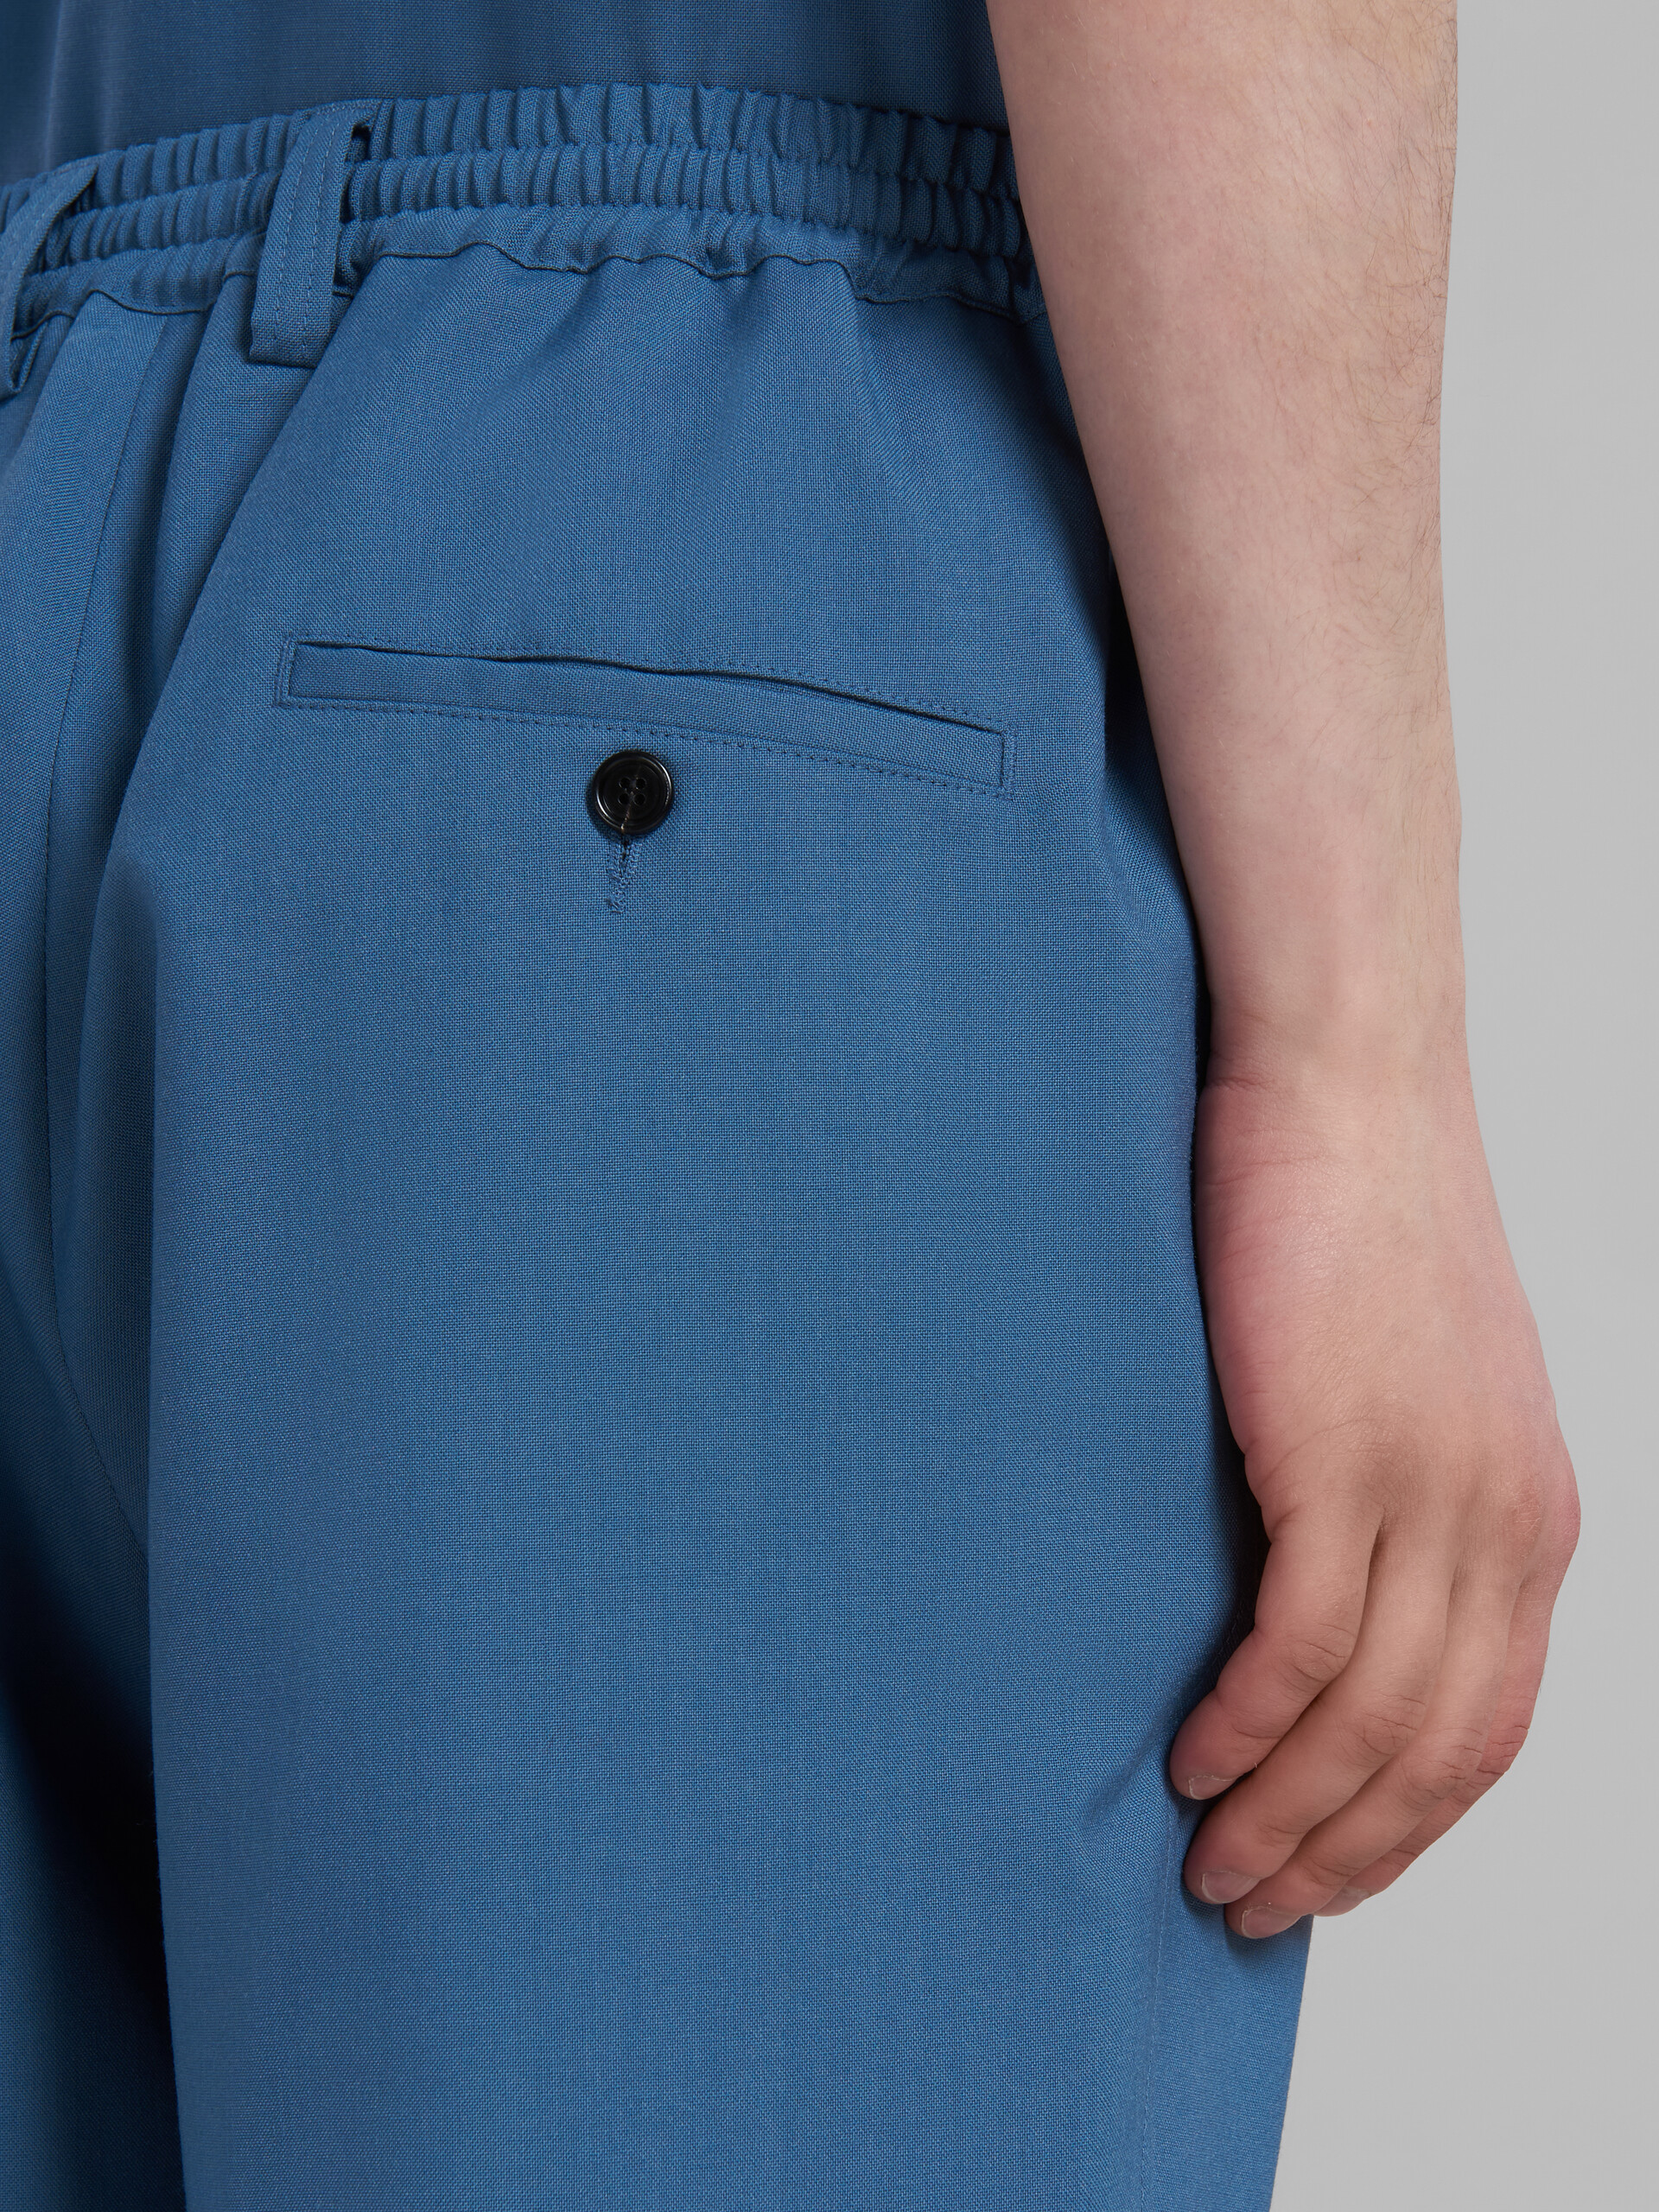 Pantalones azules de lana tropical con cordón y pliegues - Pantalones - Image 4